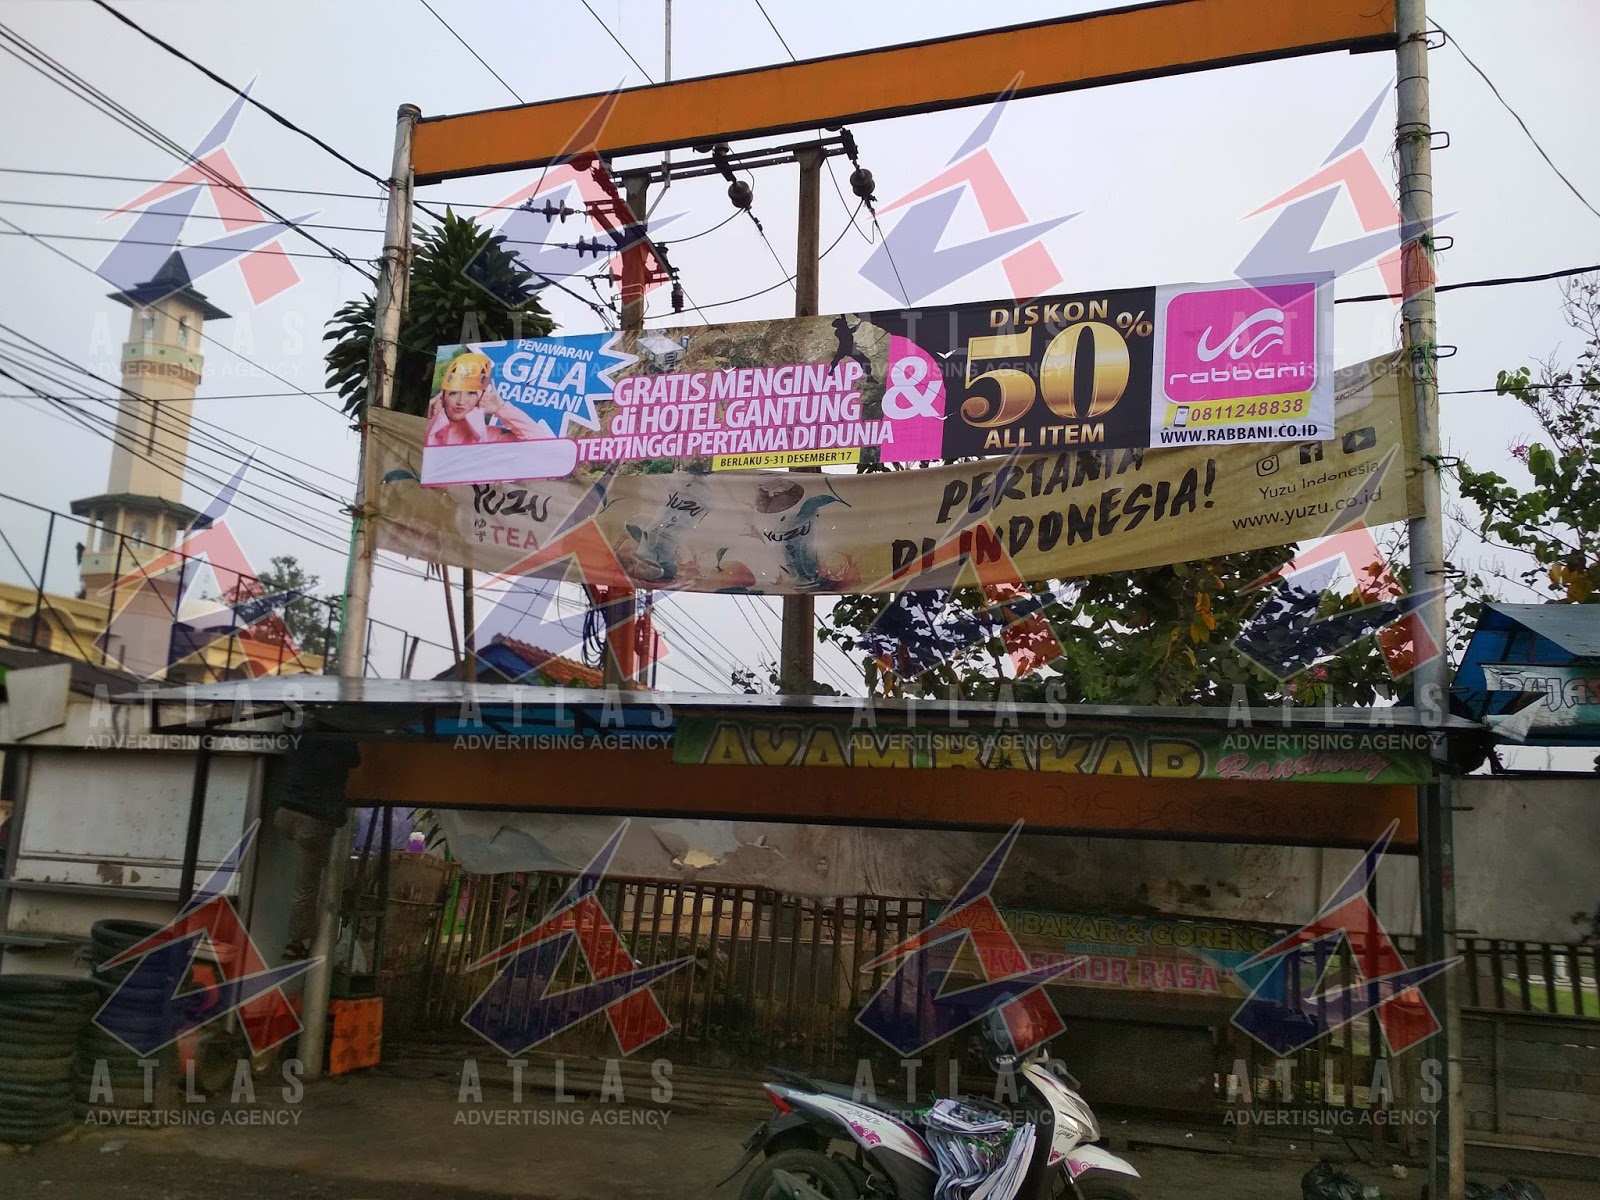  Spanduk  Roti Bakar Bandung  gambar contoh banners